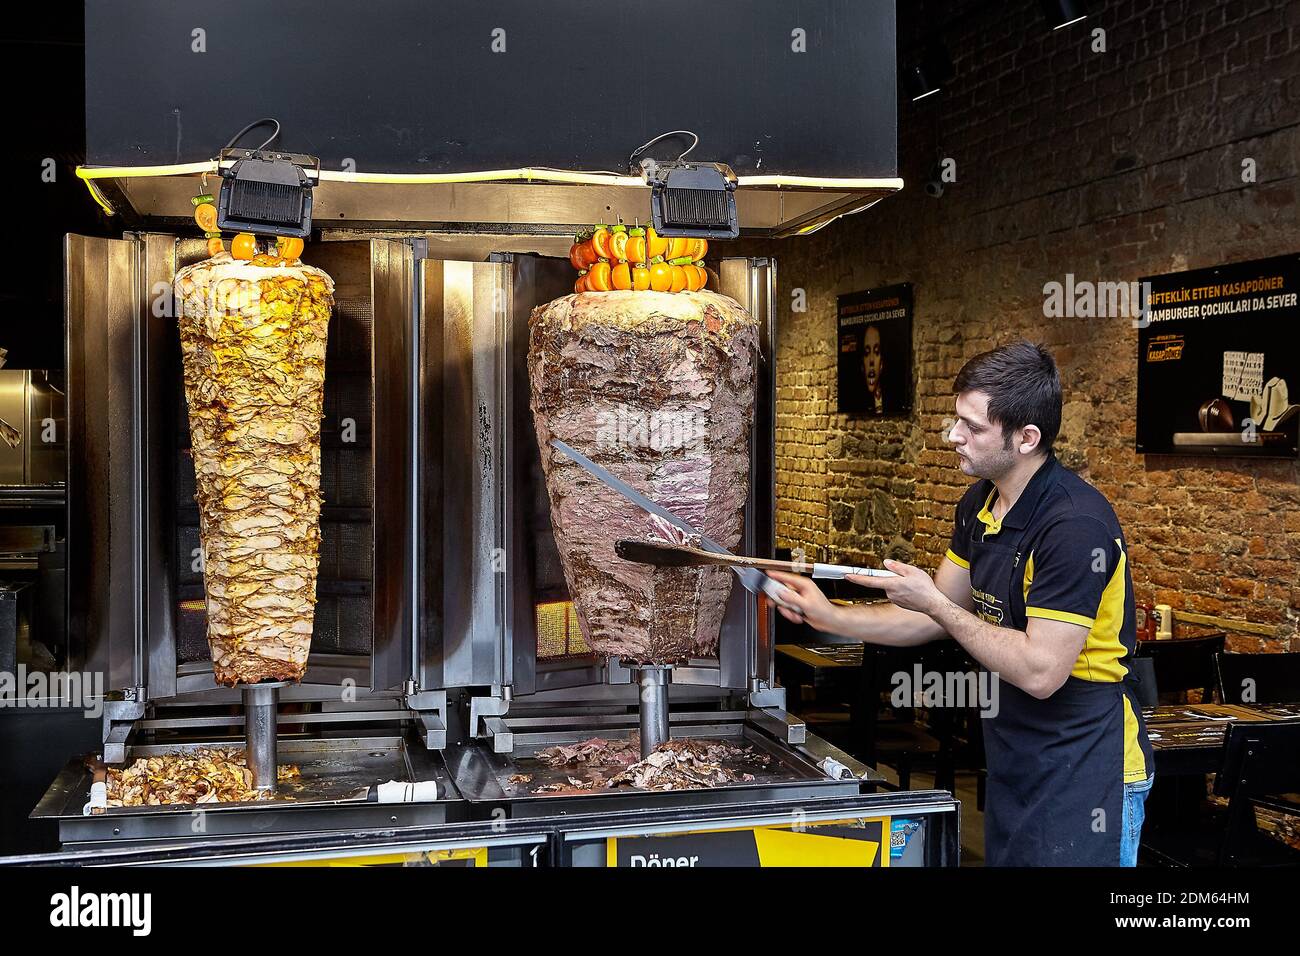 Istanbul, Turquie - 14 février 2020: Le vendeur de kebabs de doner le plat  contenant de la viande cuite sur une broche verticale Photo Stock - Alamy